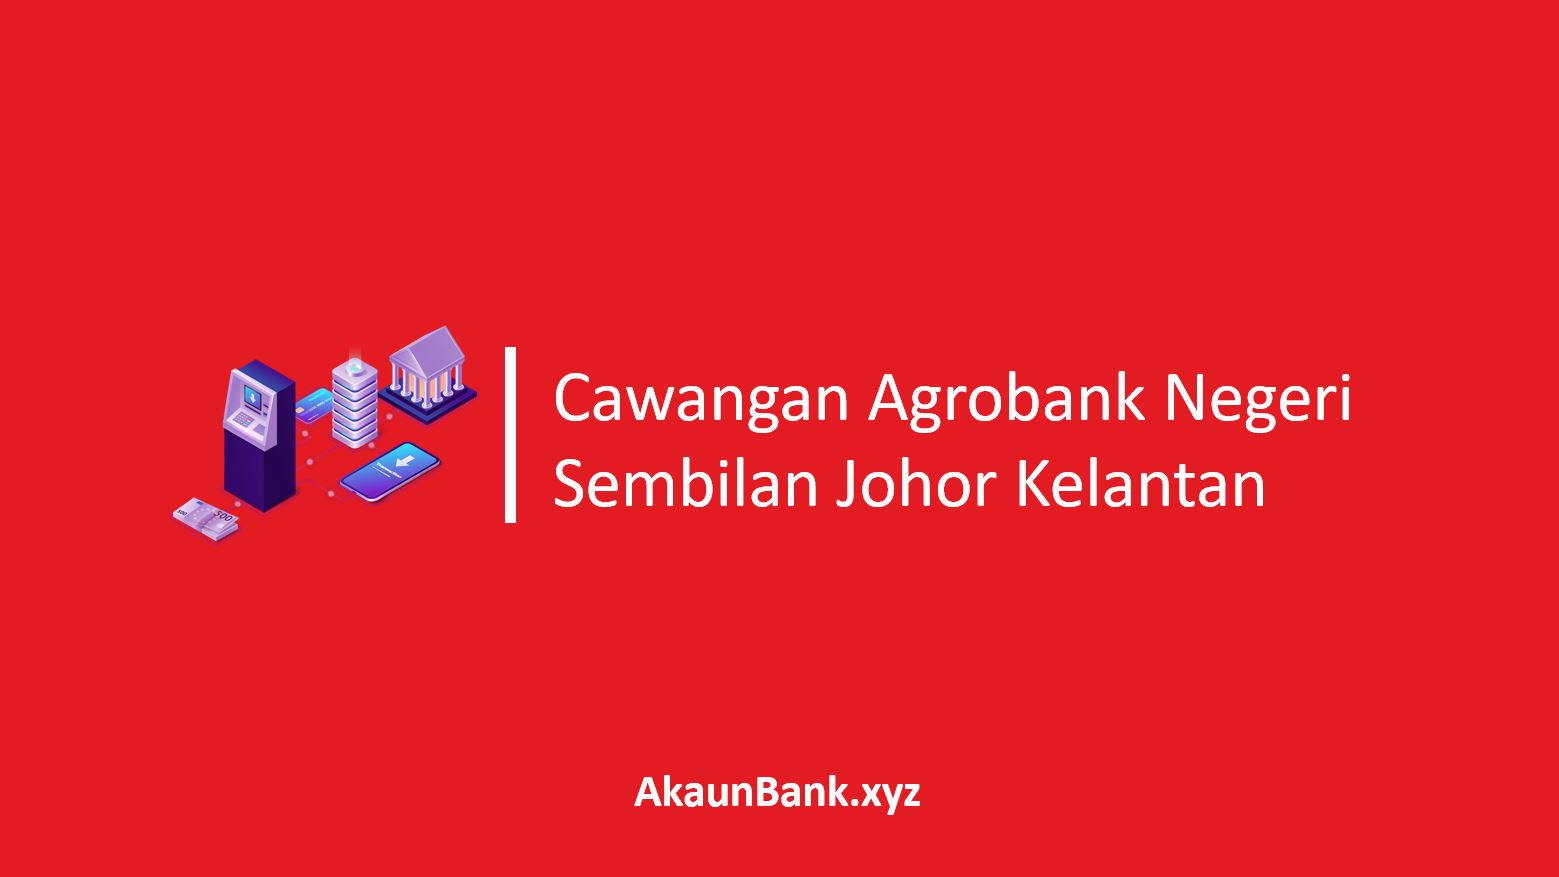 Cawangan Agrobank Negeri Sembilan Johor Kelantan